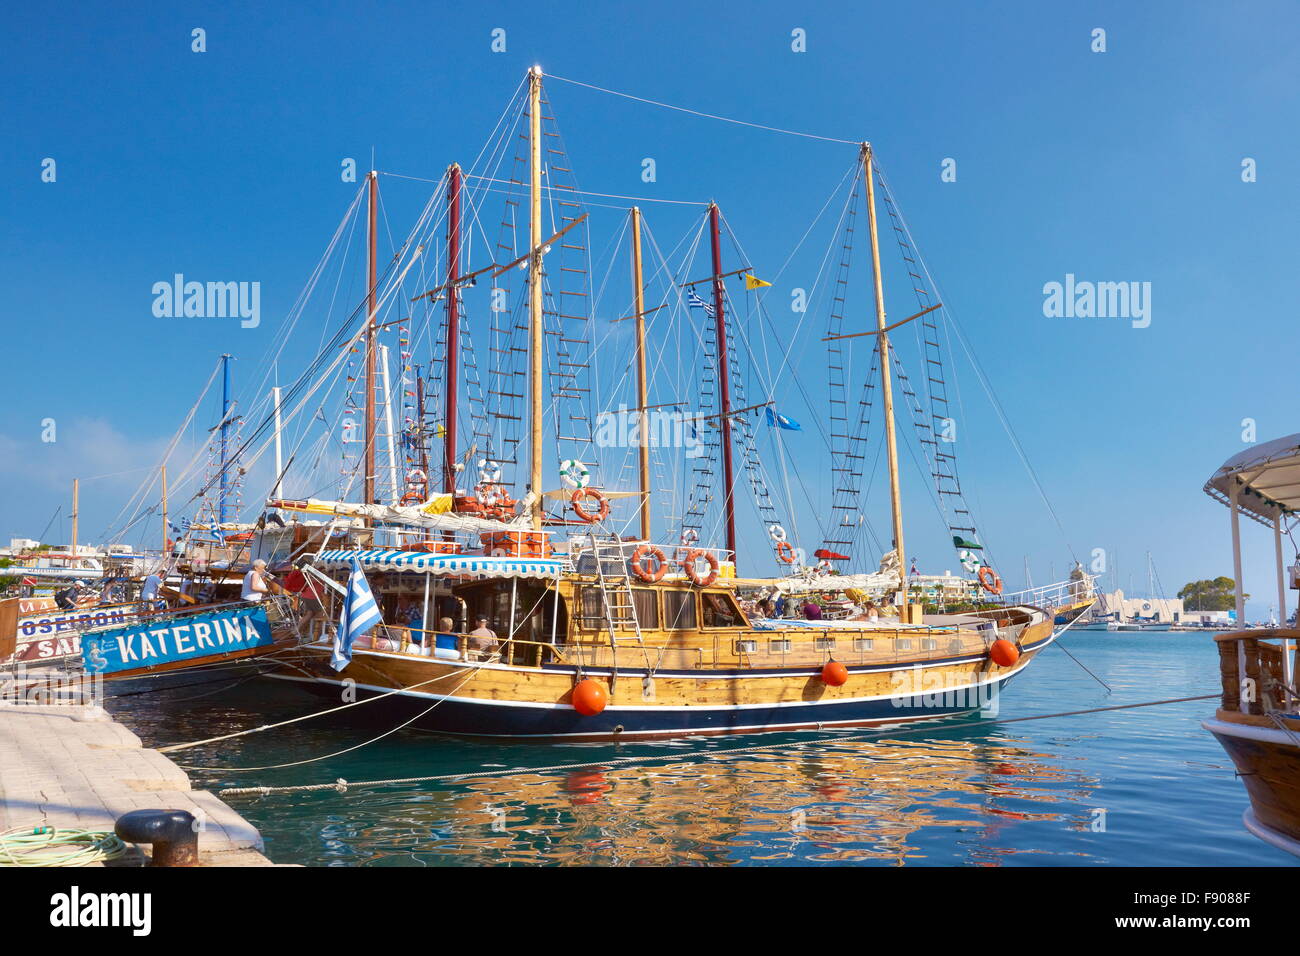 Hafen von Kos Stadt, Kos, Dodekanes, Griechenland Stockfoto